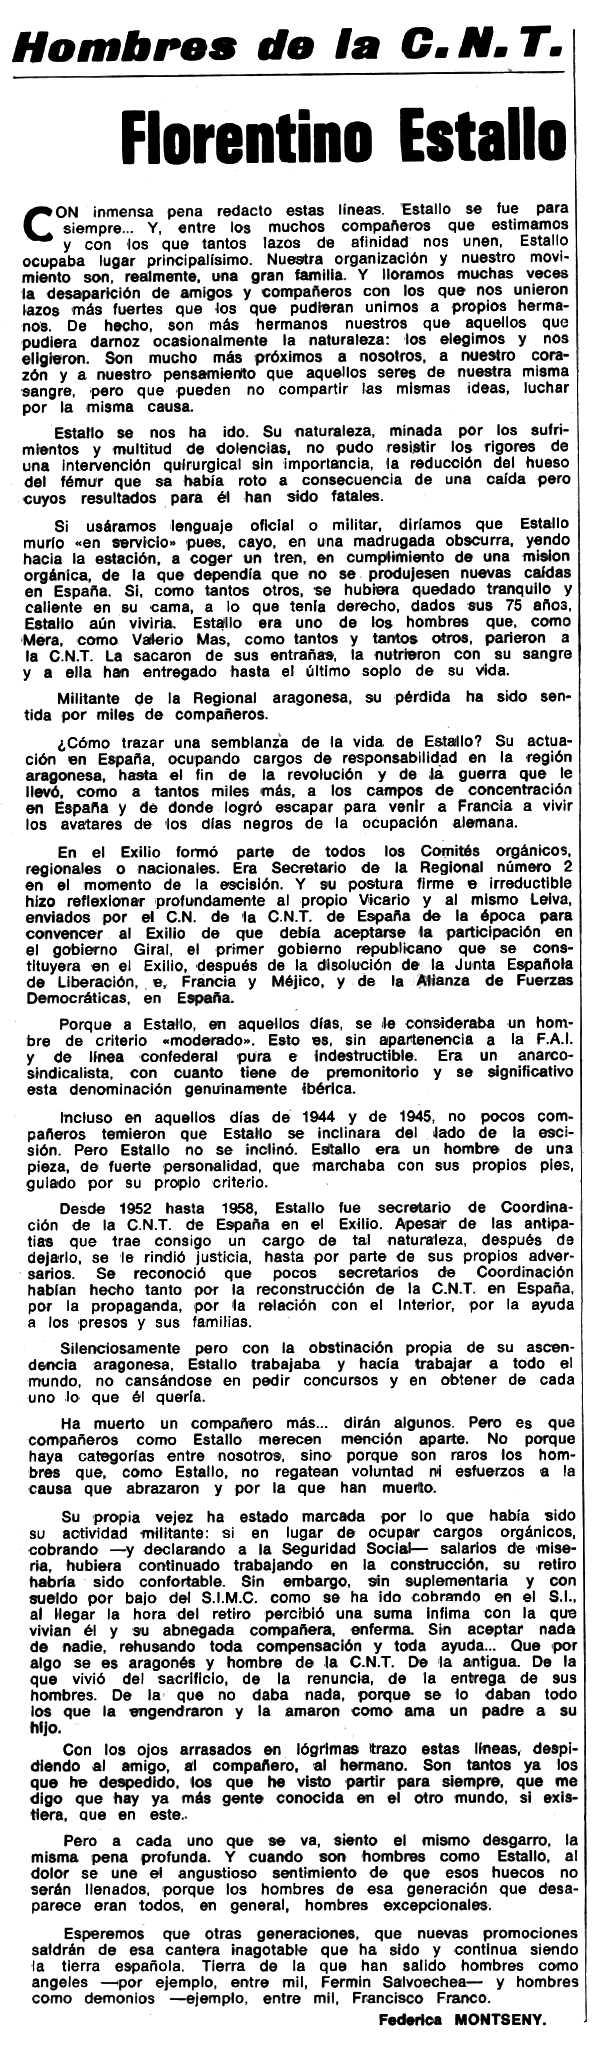 Necrològica de Florentino Estallo Villacampa apareguda en el periòdic tolosà "Espoir" del 30 de novemvbre de 1975